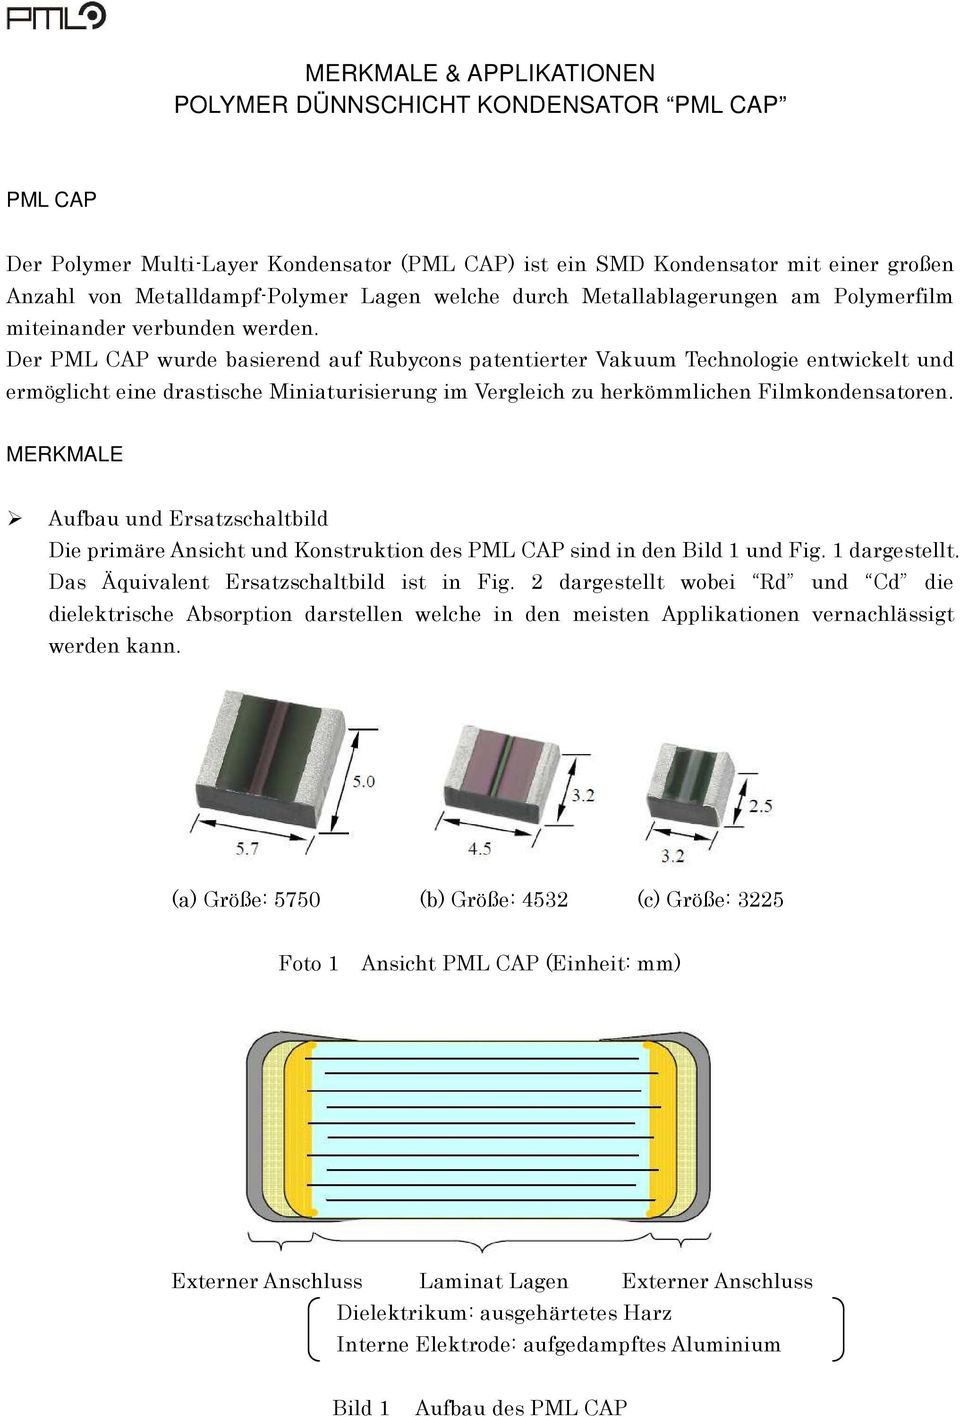 Der PML CAP wurde basierend auf Rubycons patentierter Vakuum Technologie entwickelt und ermöglicht eine drastische Miniaturisierung im Vergleich zu herkömmlichen Filmkondensatoren.